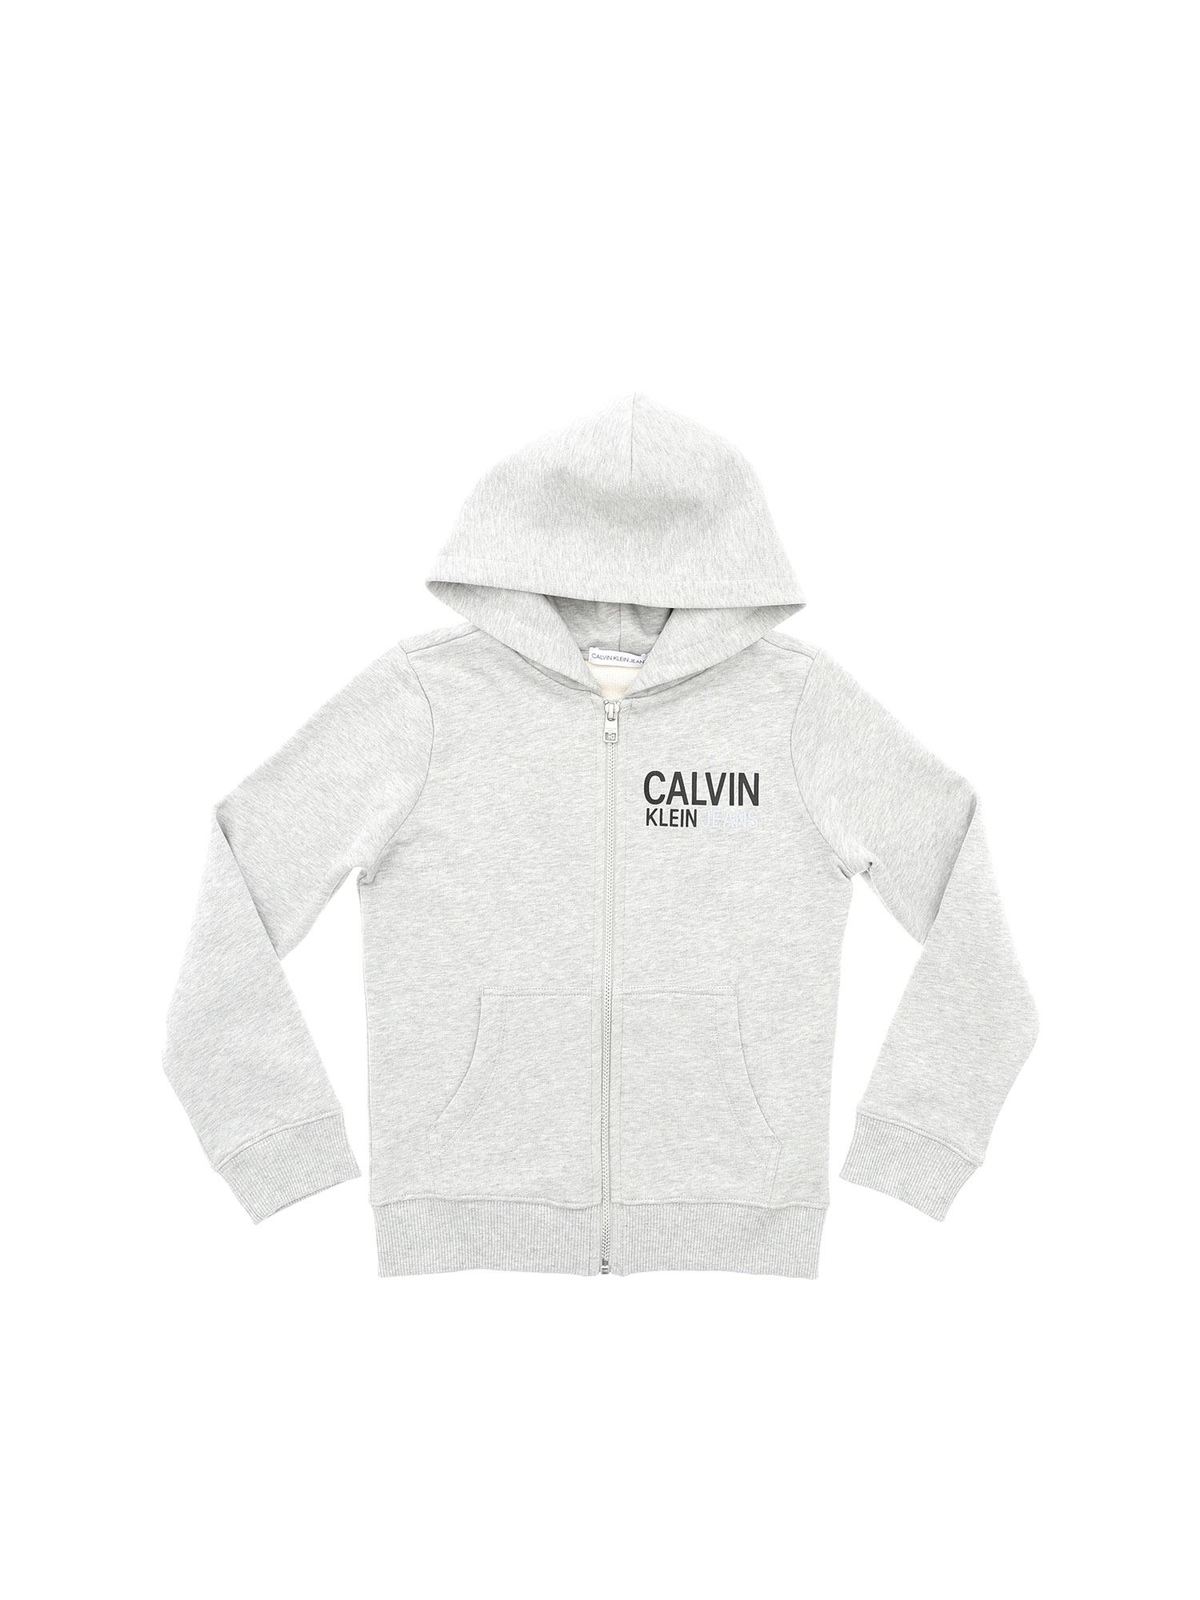 calvin klein est 1978 hoodie